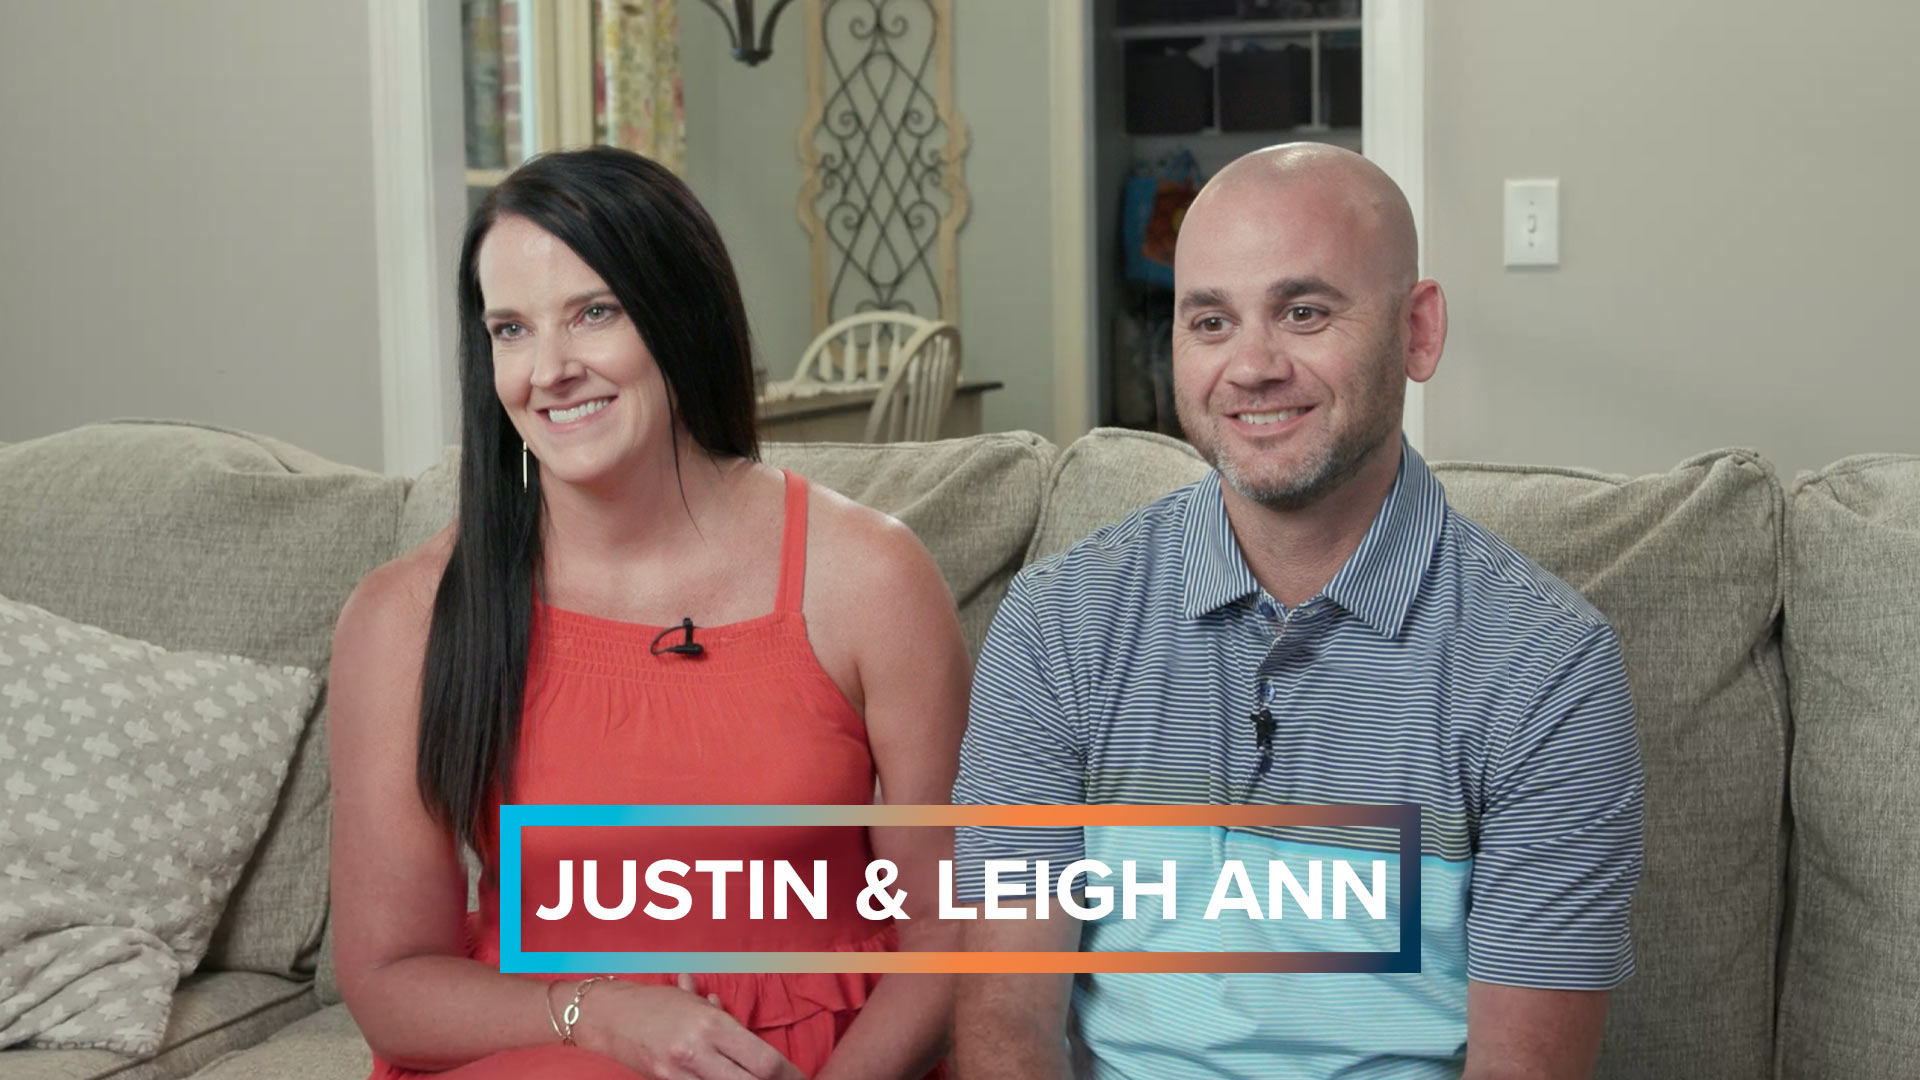 Justin & Leigh Ann